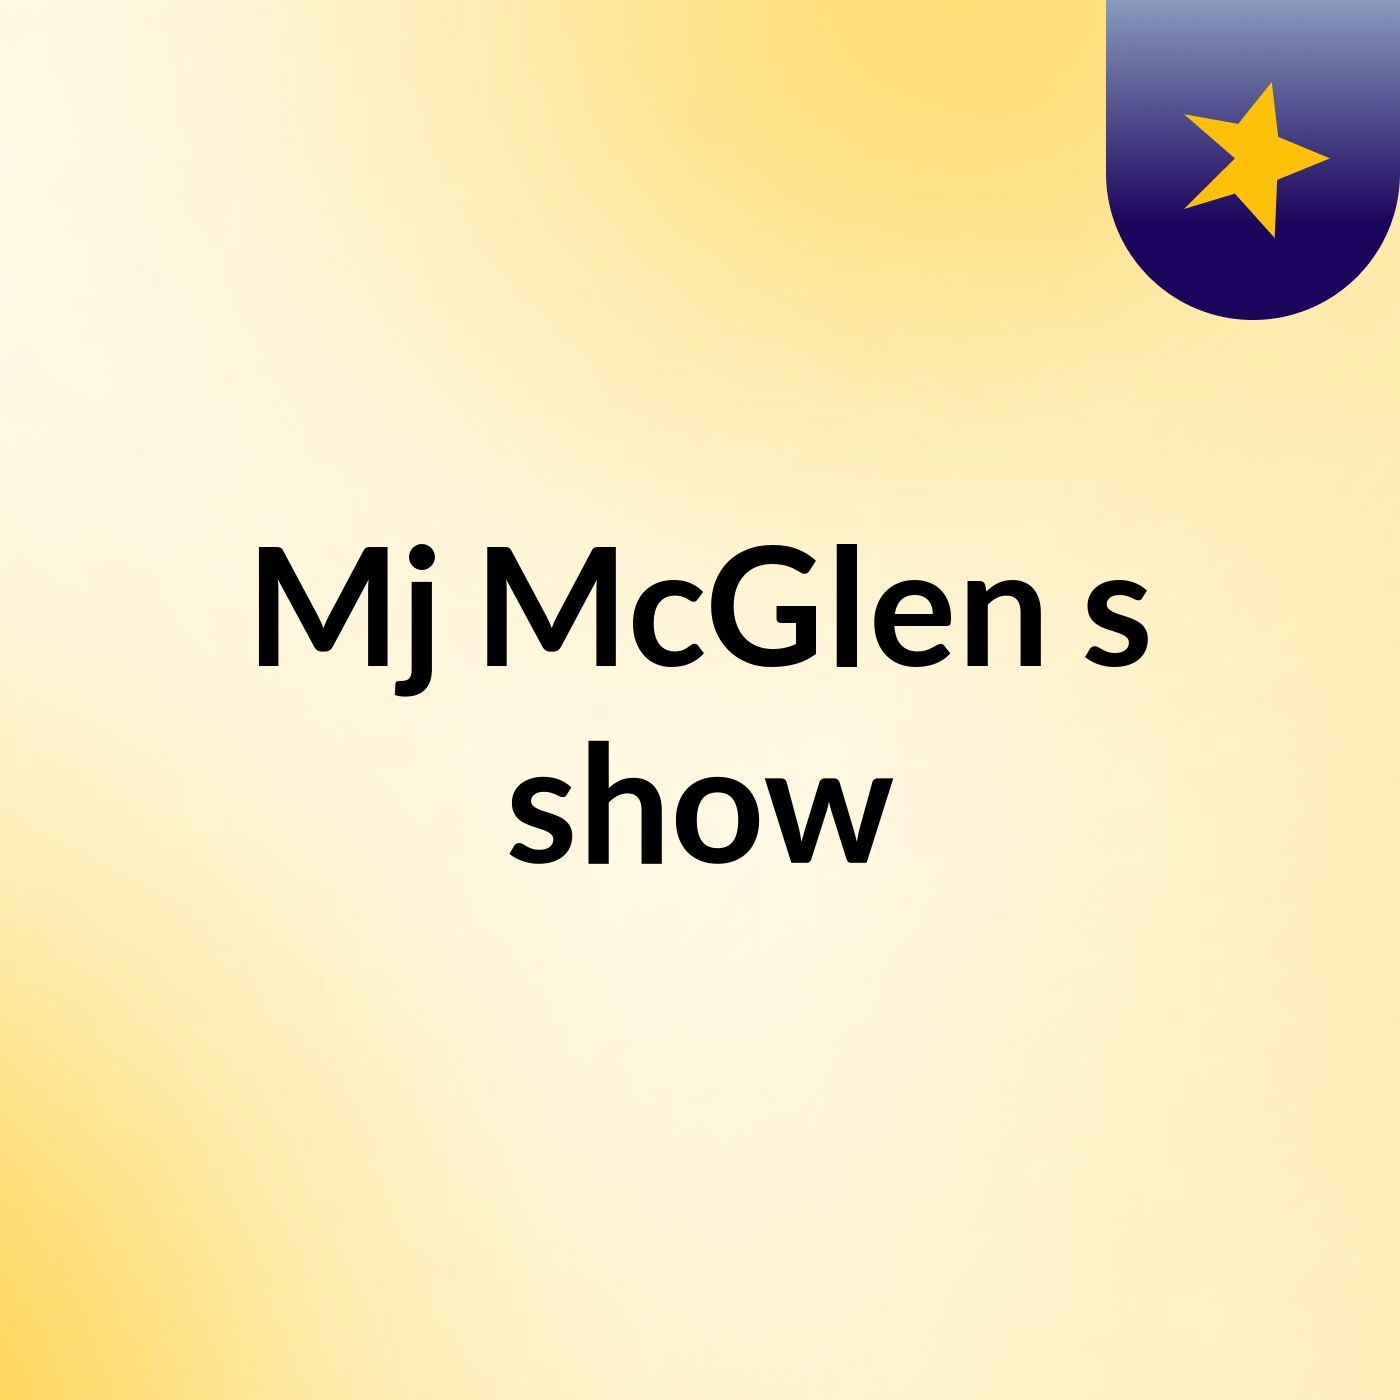 Episode 8 - Mj McGlen's show